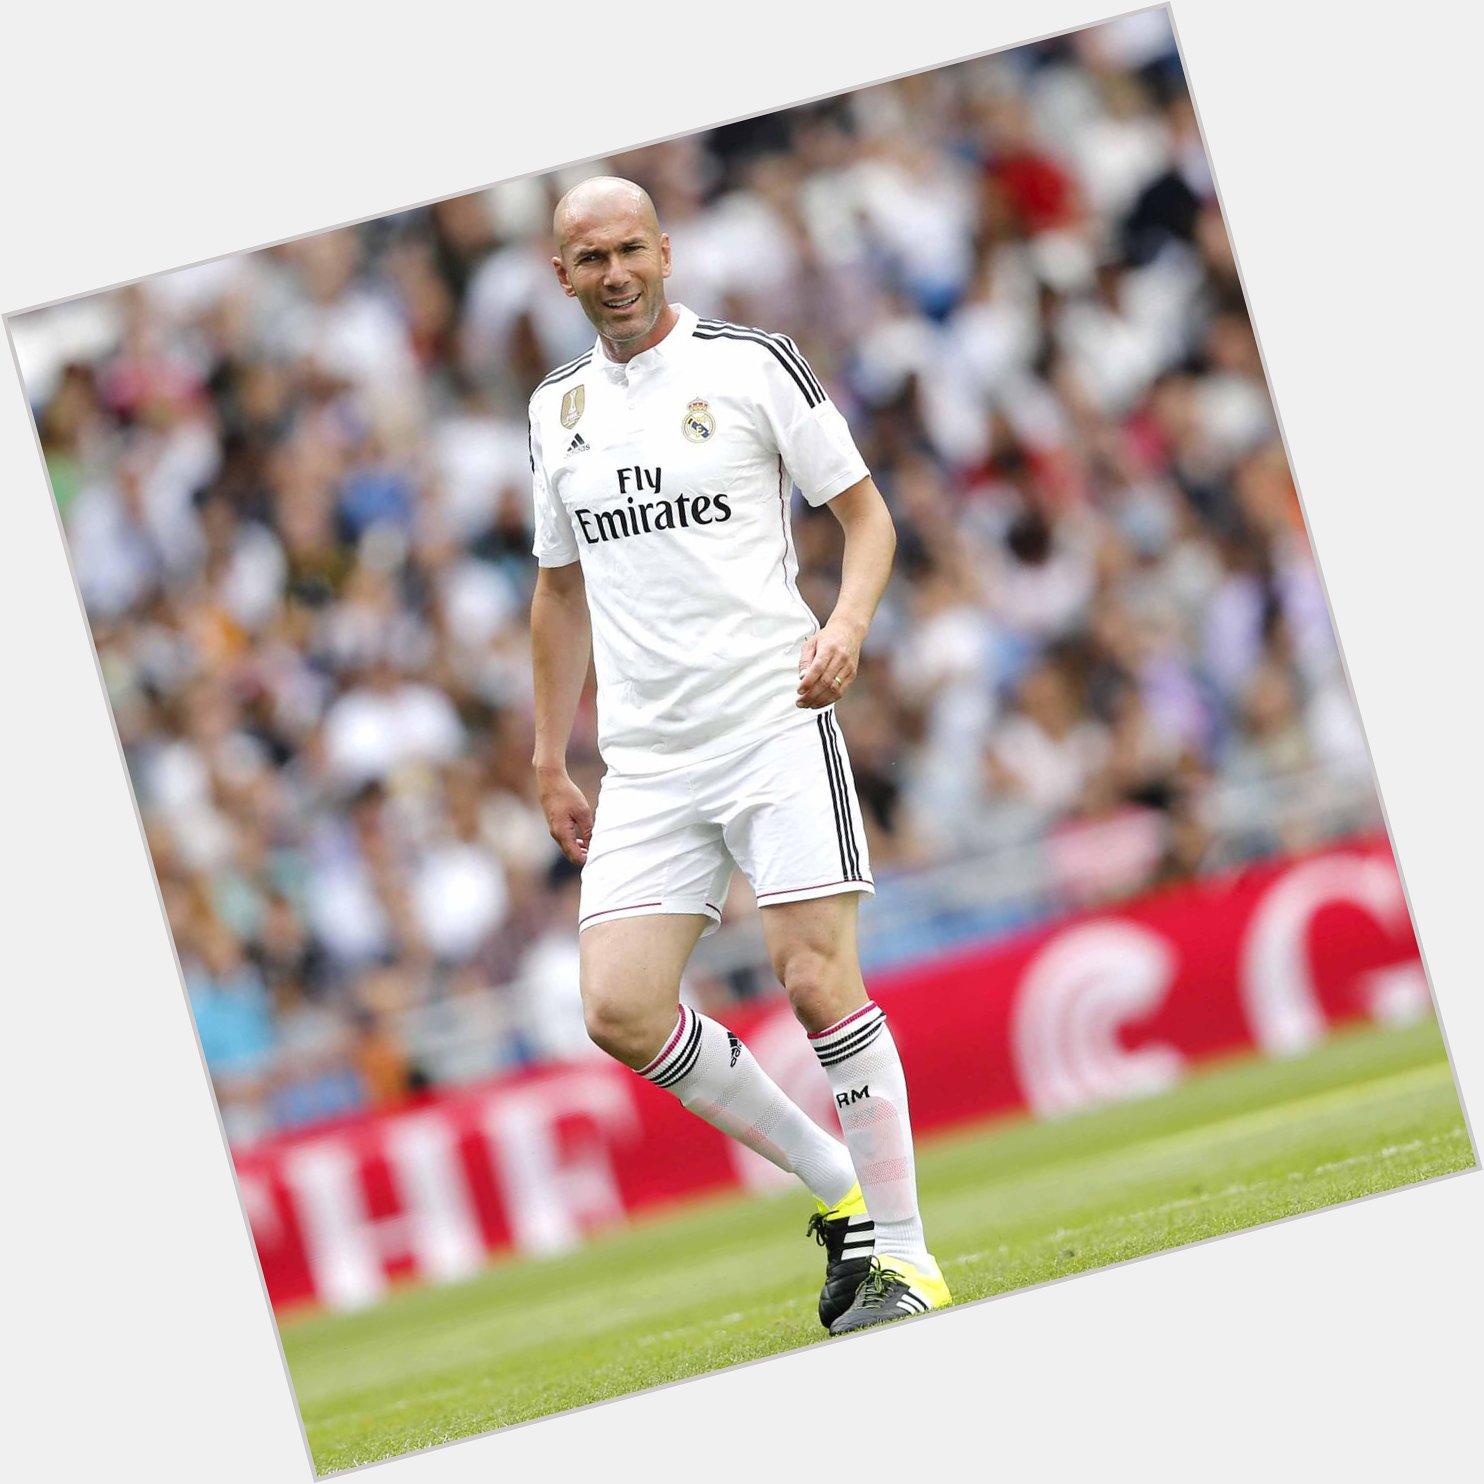 Happy birthday to Zinedine Zidane who turns 43 today!  